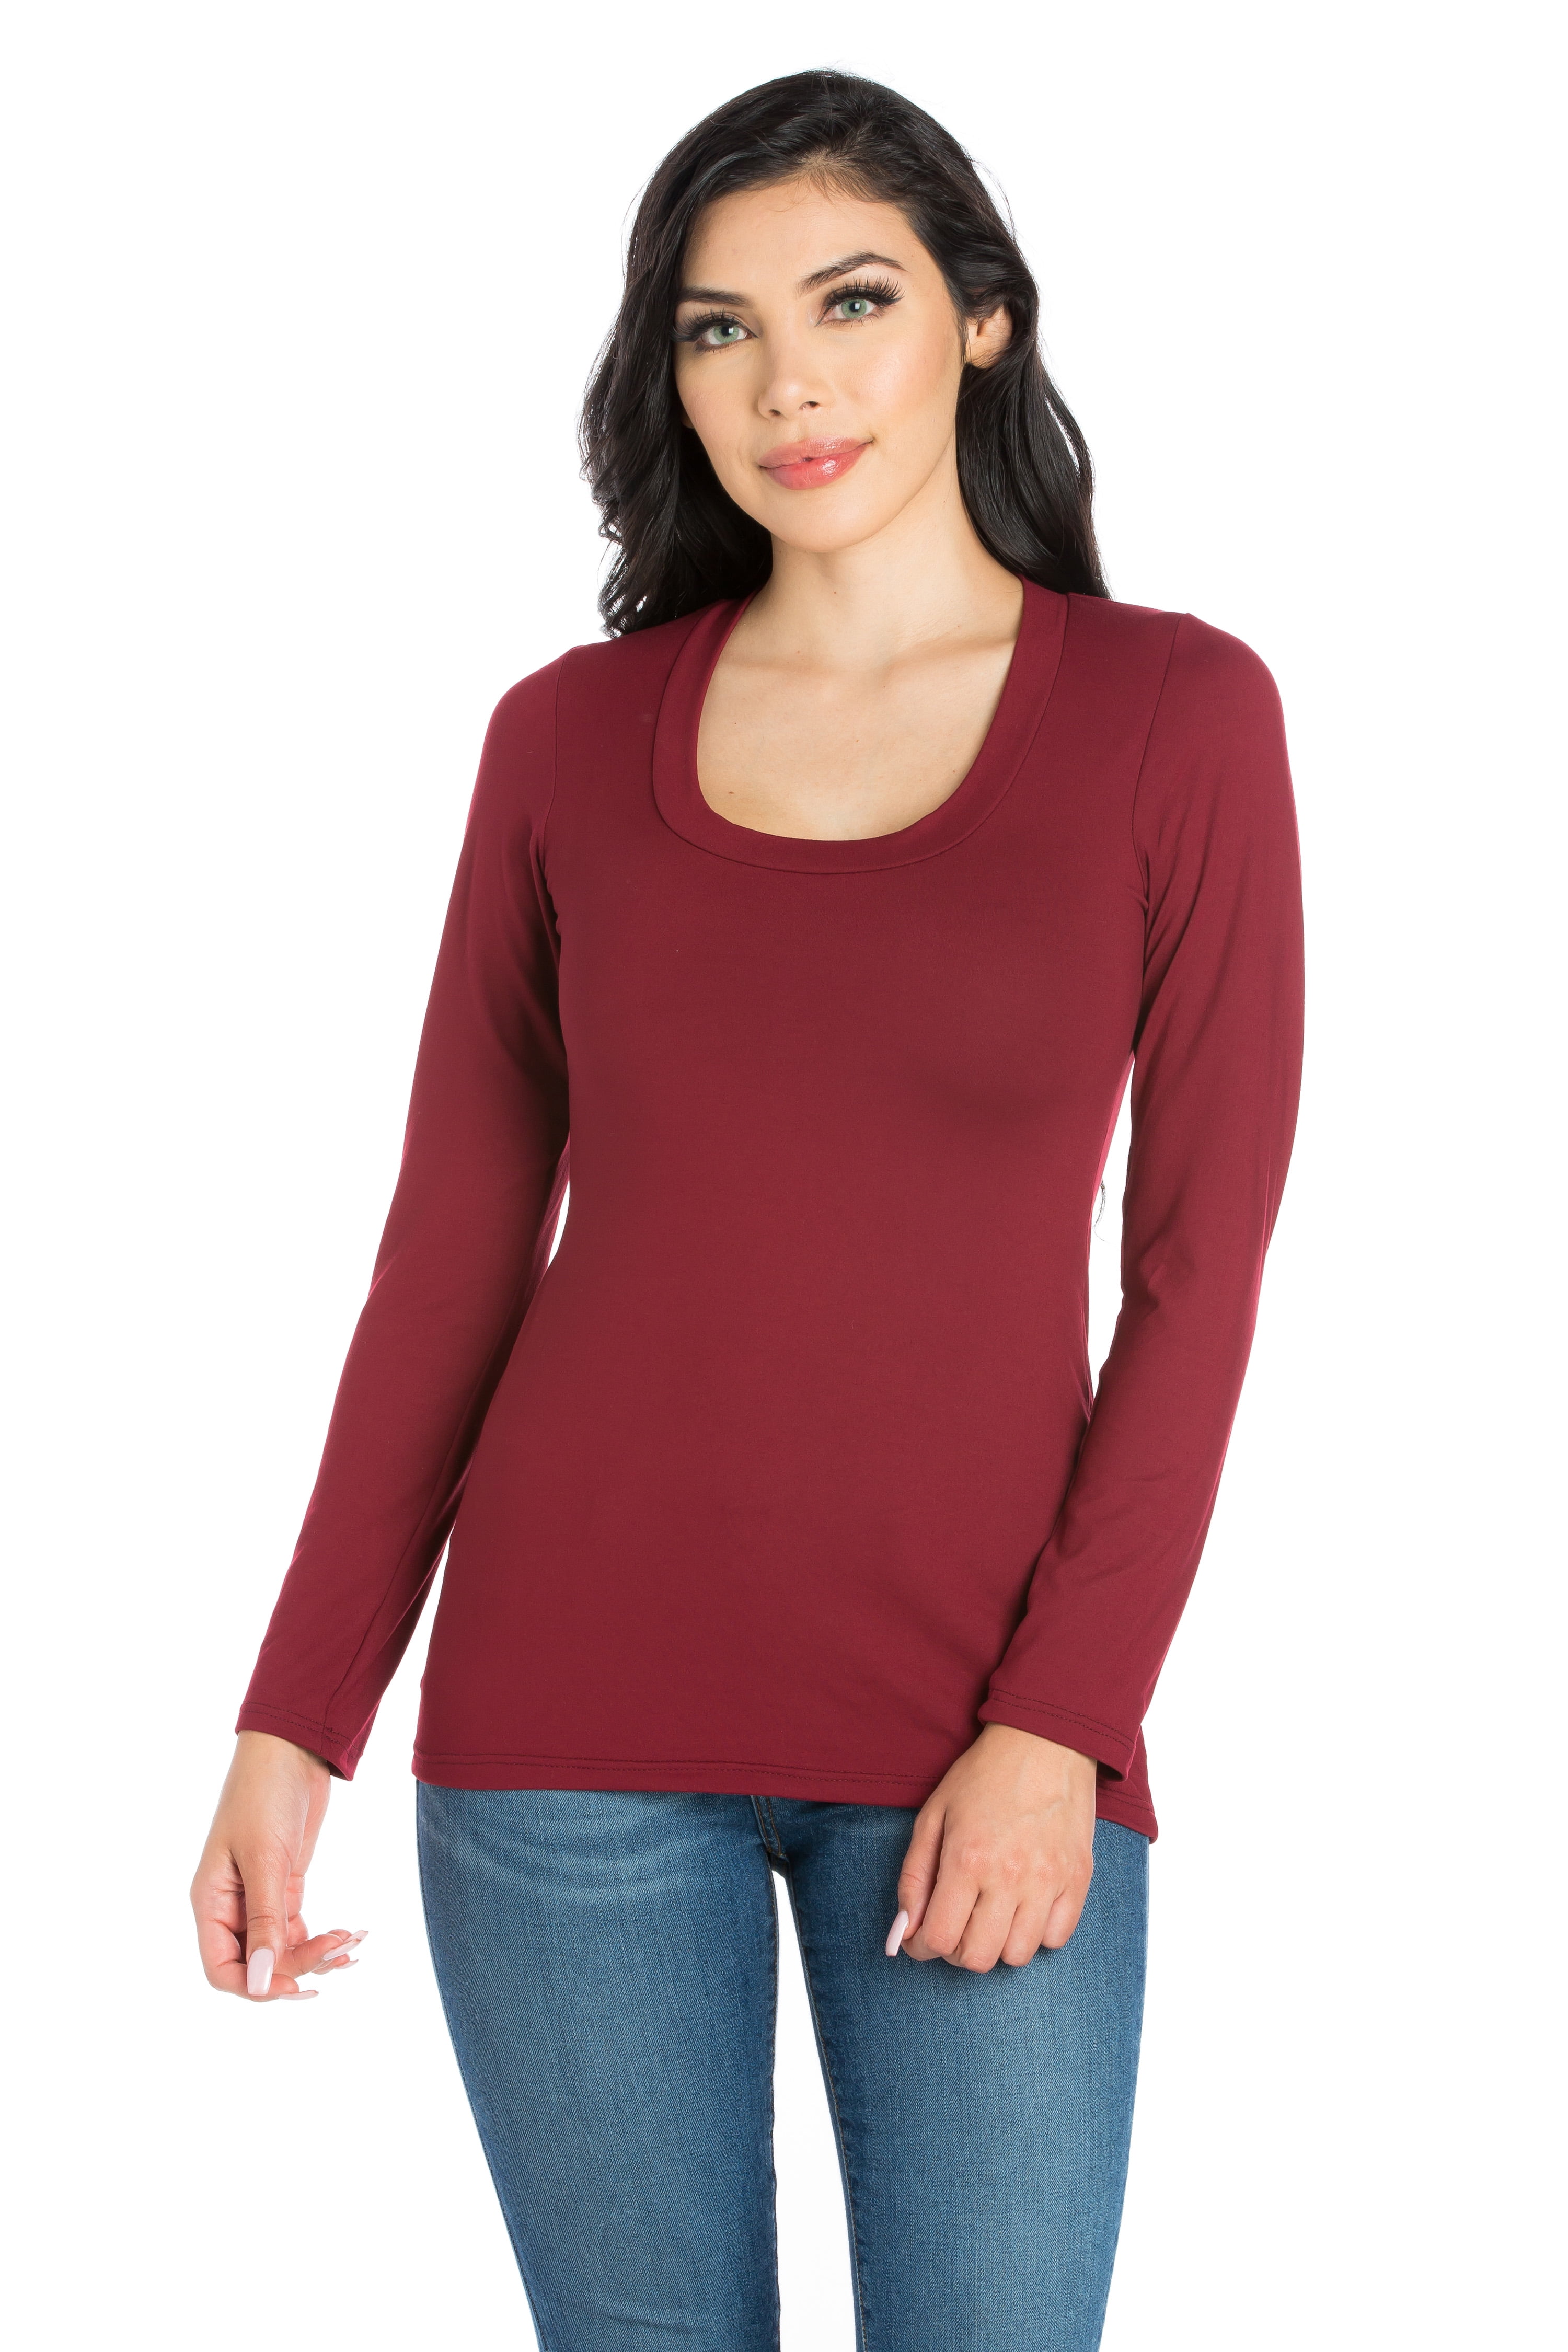 Women's Solid Long Sleeve Scoop Neck Top - Walmart.com